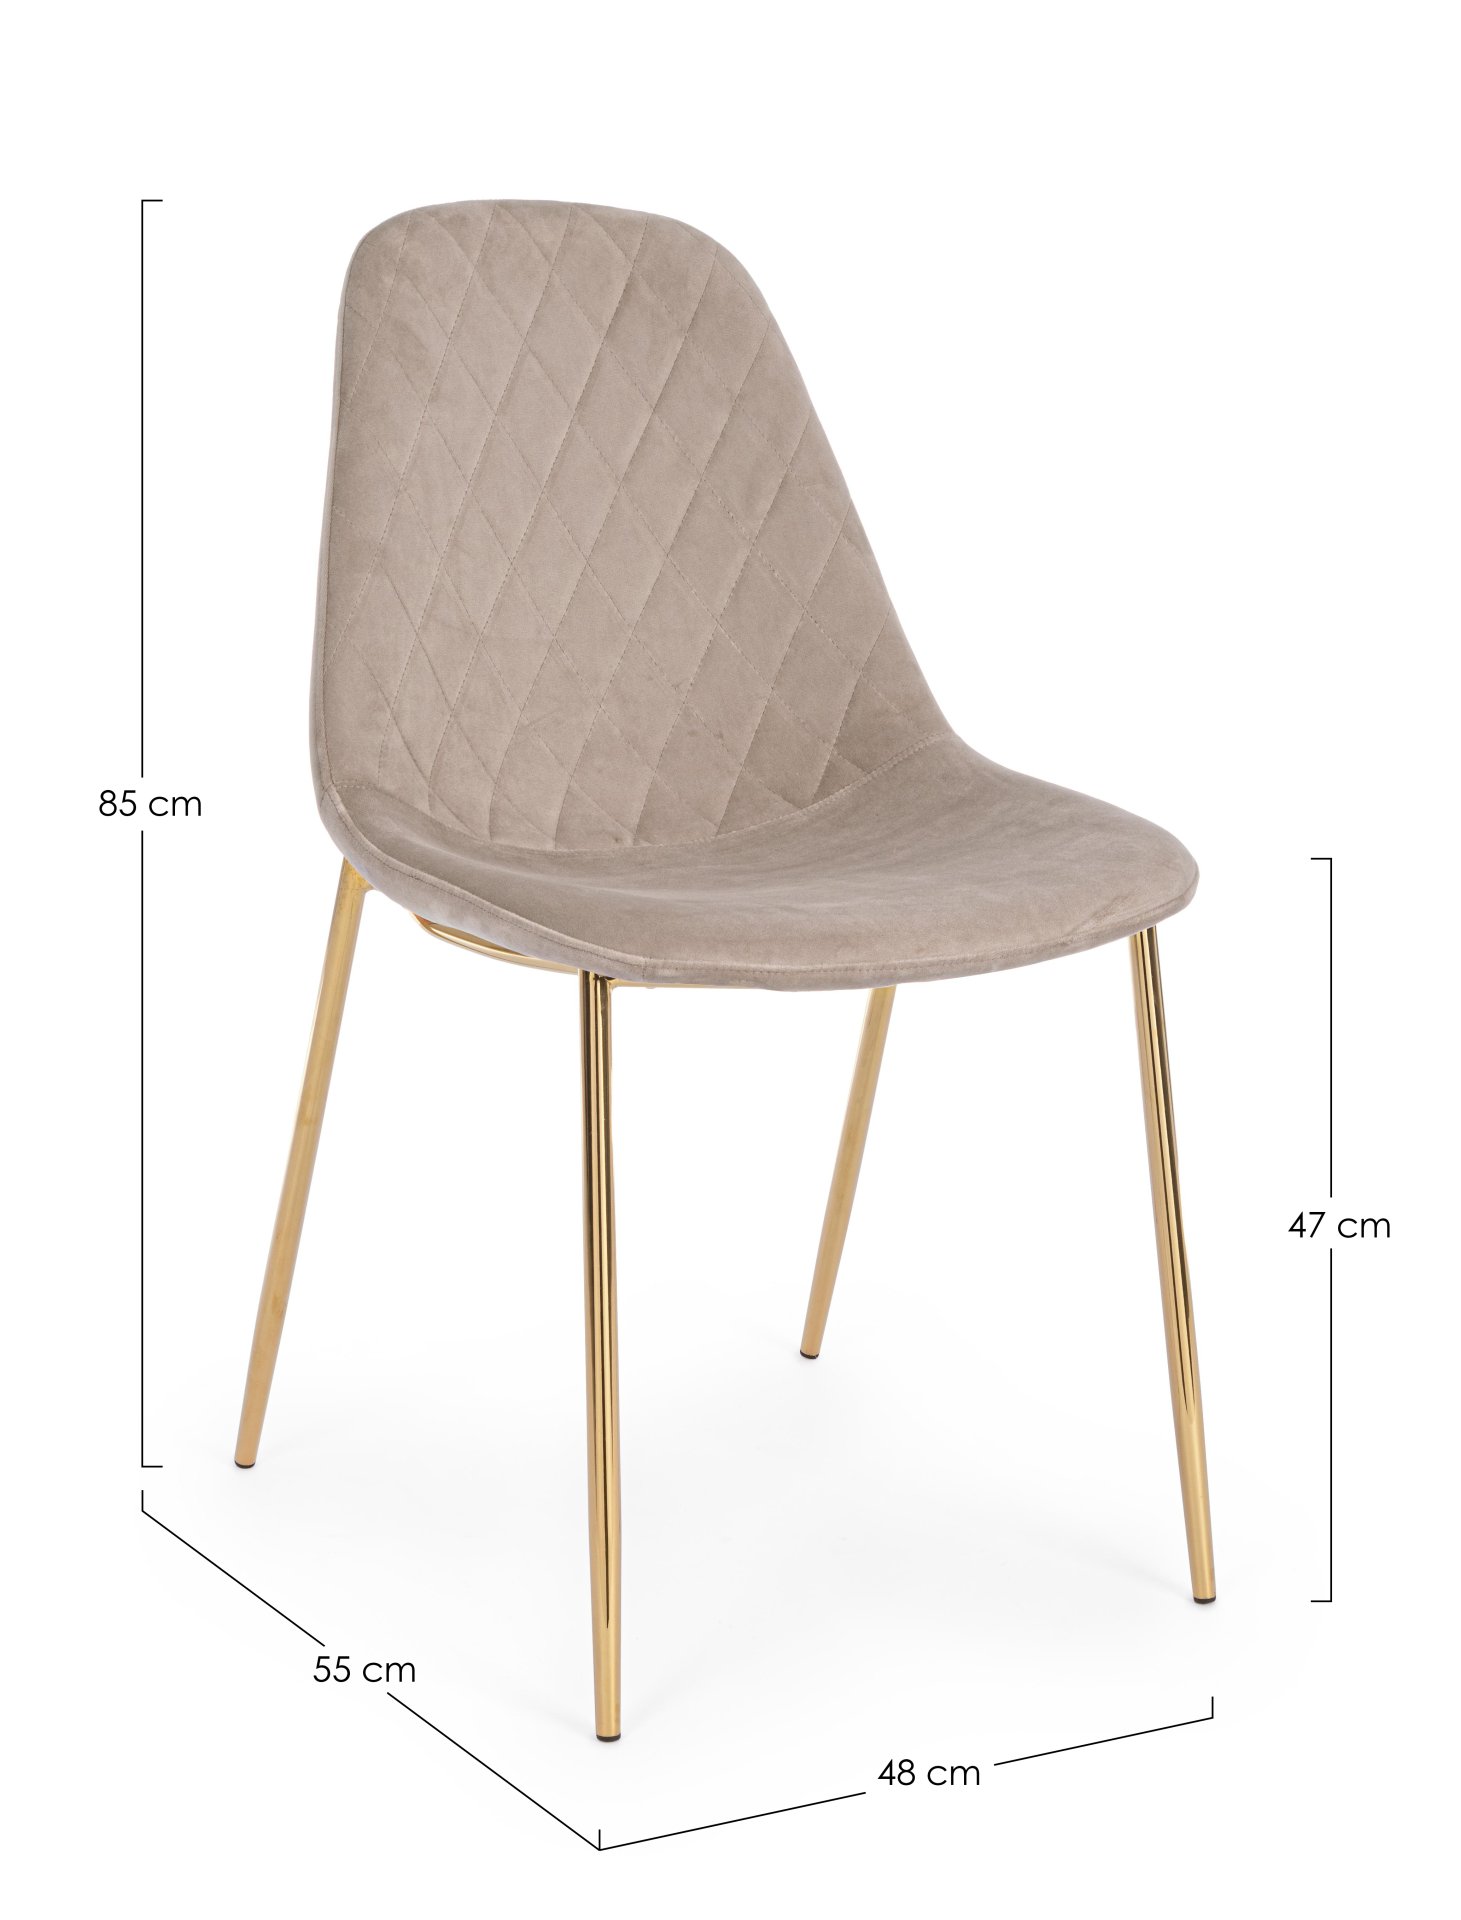 Der Esszimmerstuhl Terry überzeugt mit seinem modernem Design. Gefertigt wurde der Stuhl aus einem Samt-Bezug, welcher einen Taupe Farbton besitzt. Das Gestell ist aus Metall und ist Gold. Die Sitzhöhe beträgt 47 cm.